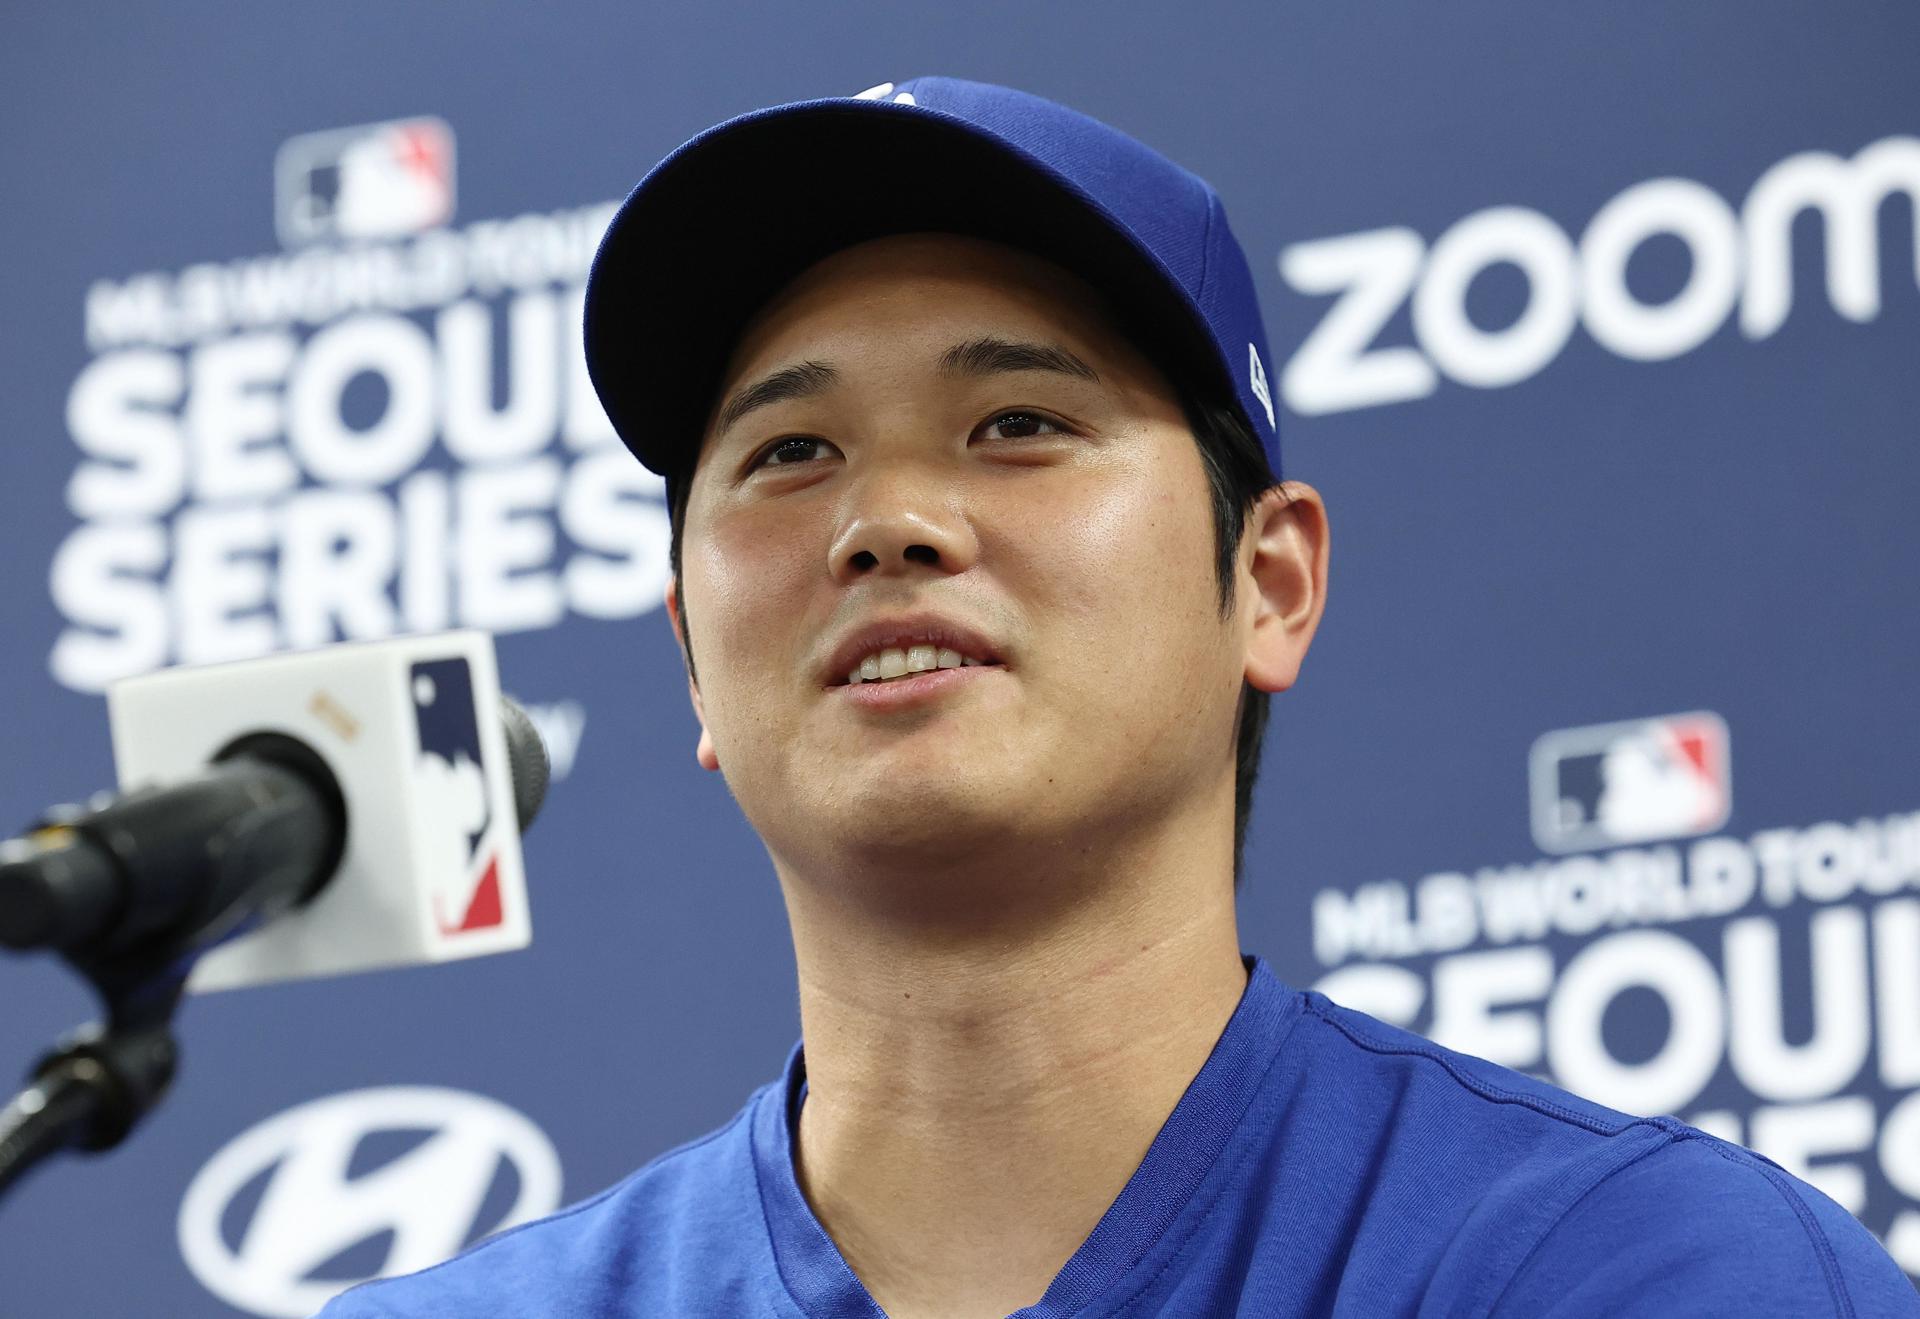 El japonés Shohei Ohtani de Los Angeles Dodgers, durante una rueda de prensa en Seúl. EFE/EPA/YONHAP SOUTH KOREA OUT